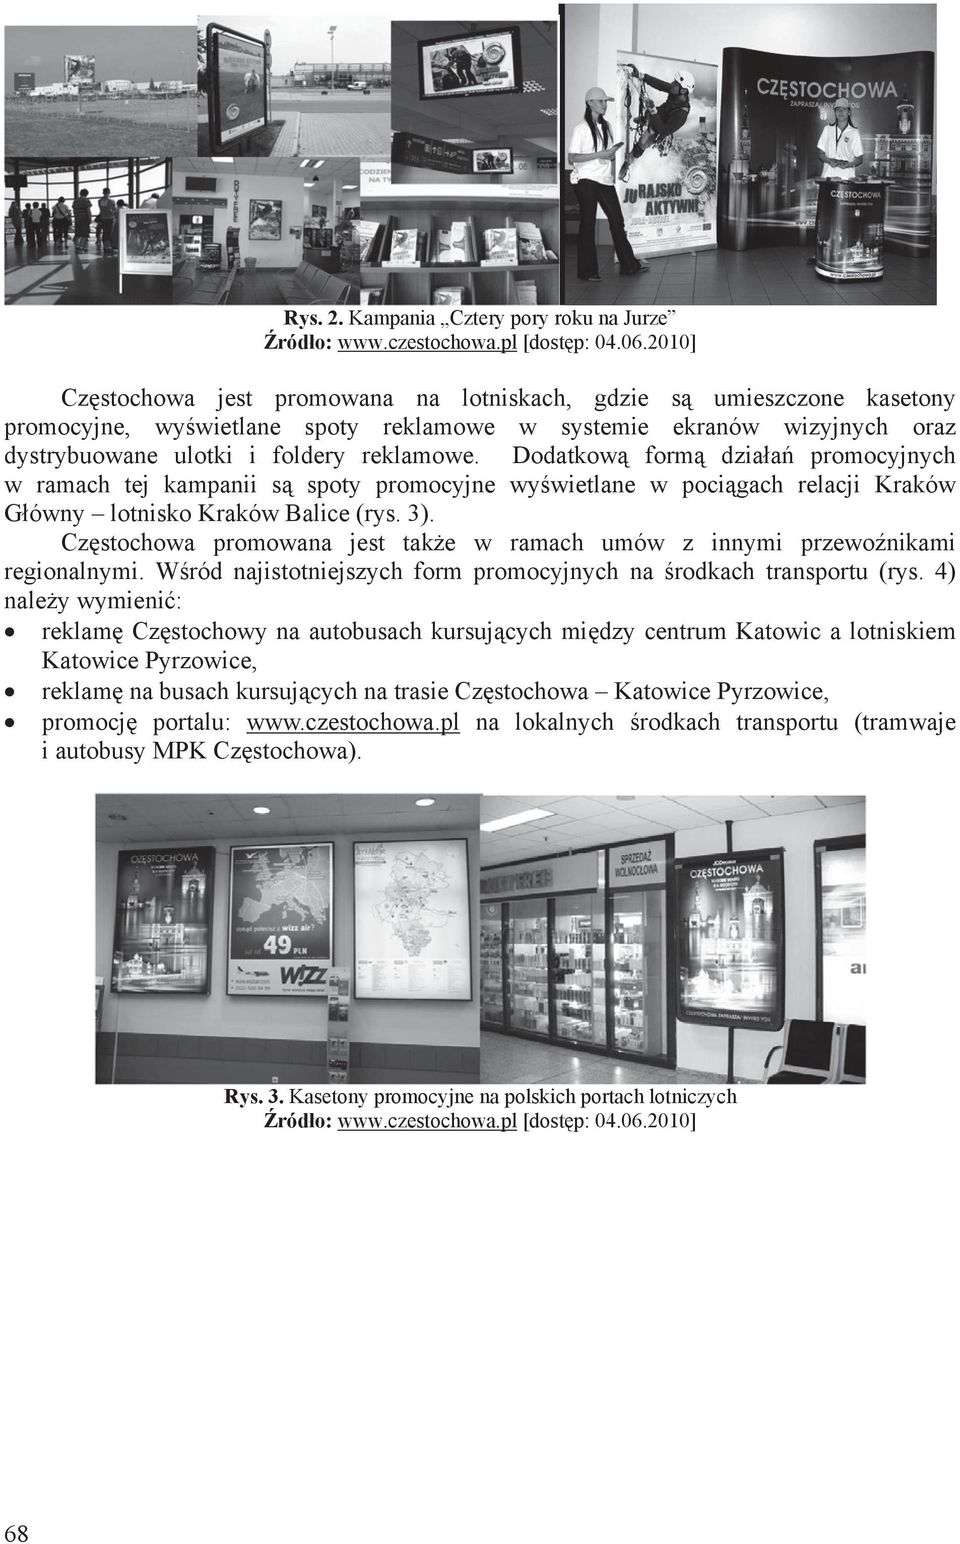 Dodatkow form dziaa promocyjnych w ramach tej kampanii s spoty promocyjne wywietlane w pocigach relacji Kraków Gówny lotnisko Kraków Balice (rys. 3).